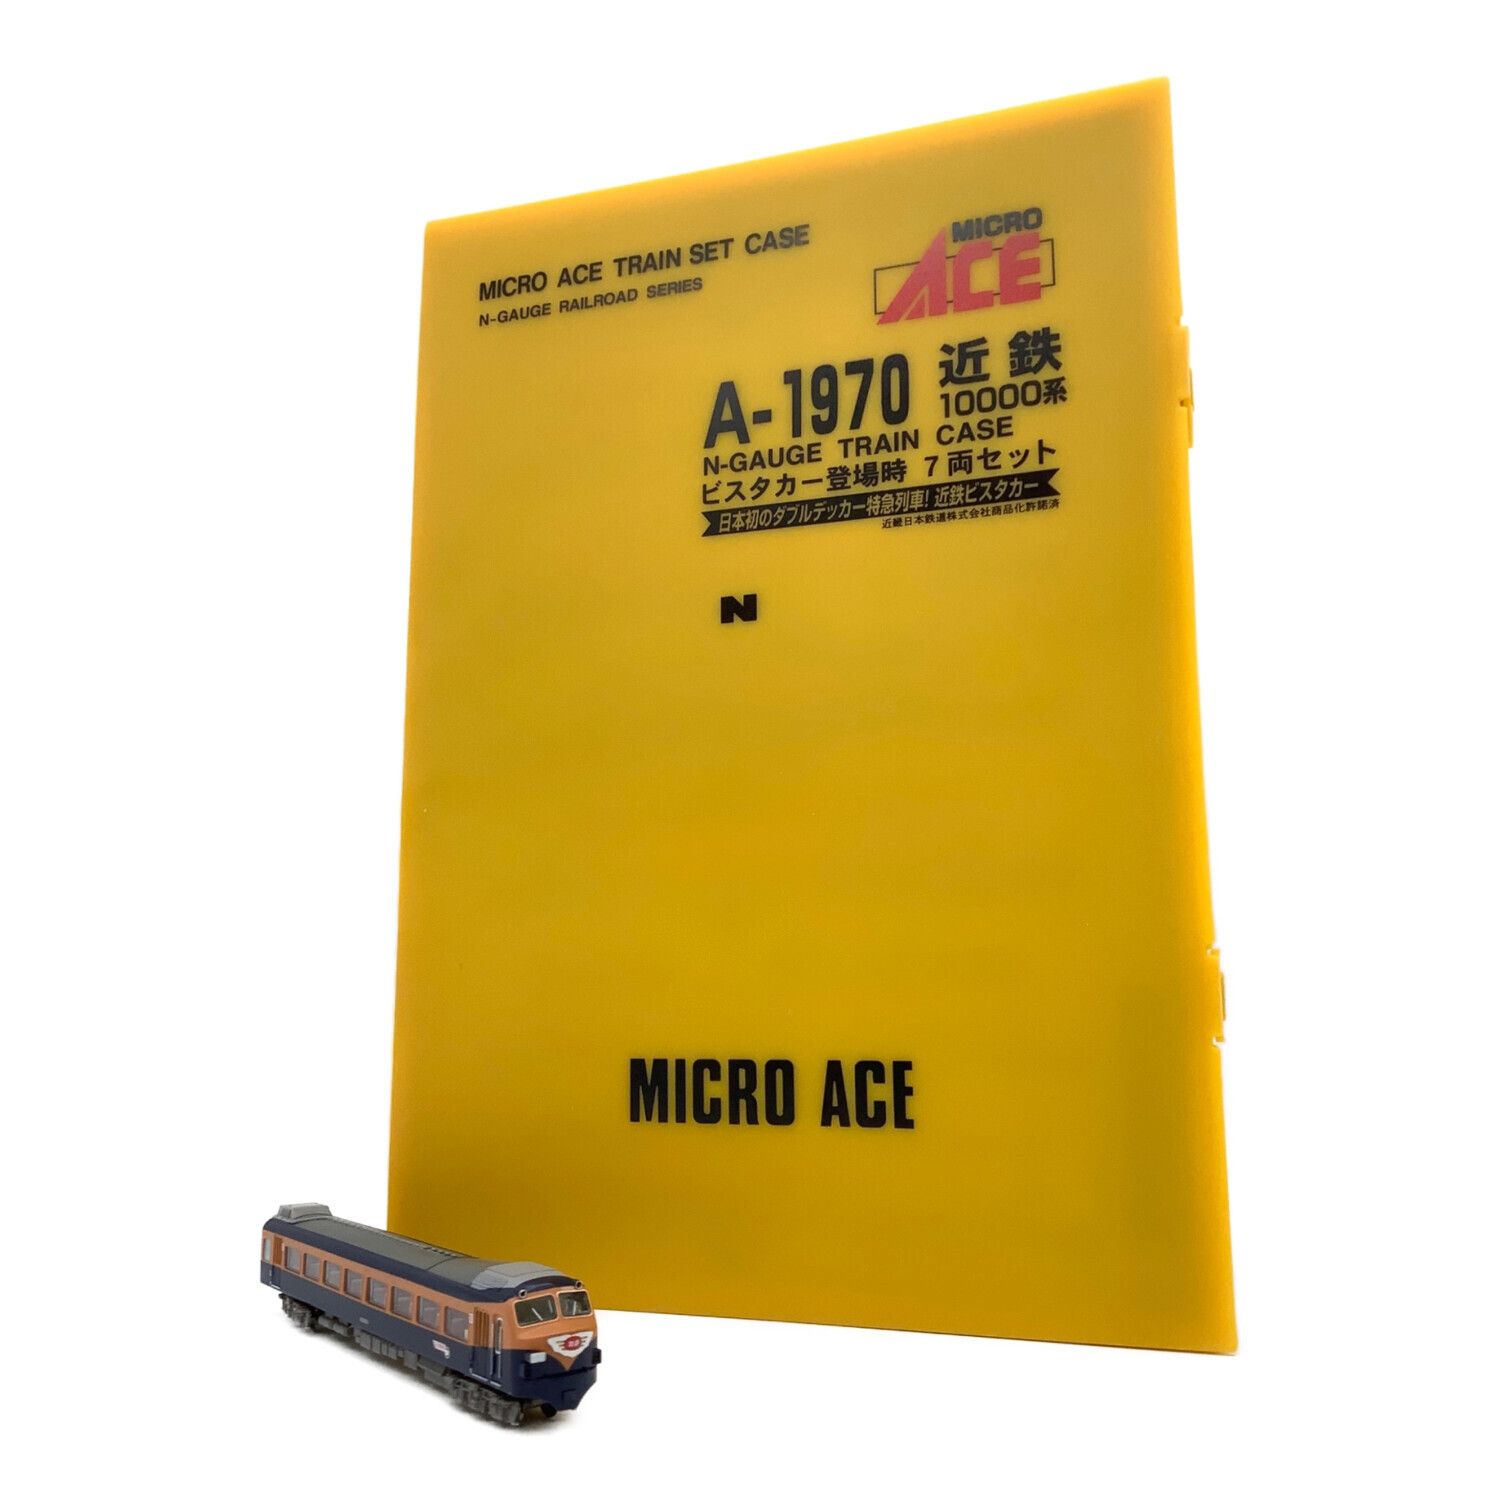 MICRO ACE (マイクロエース) Nゲージ A-1970 近鉄10000系 ビスタカー 